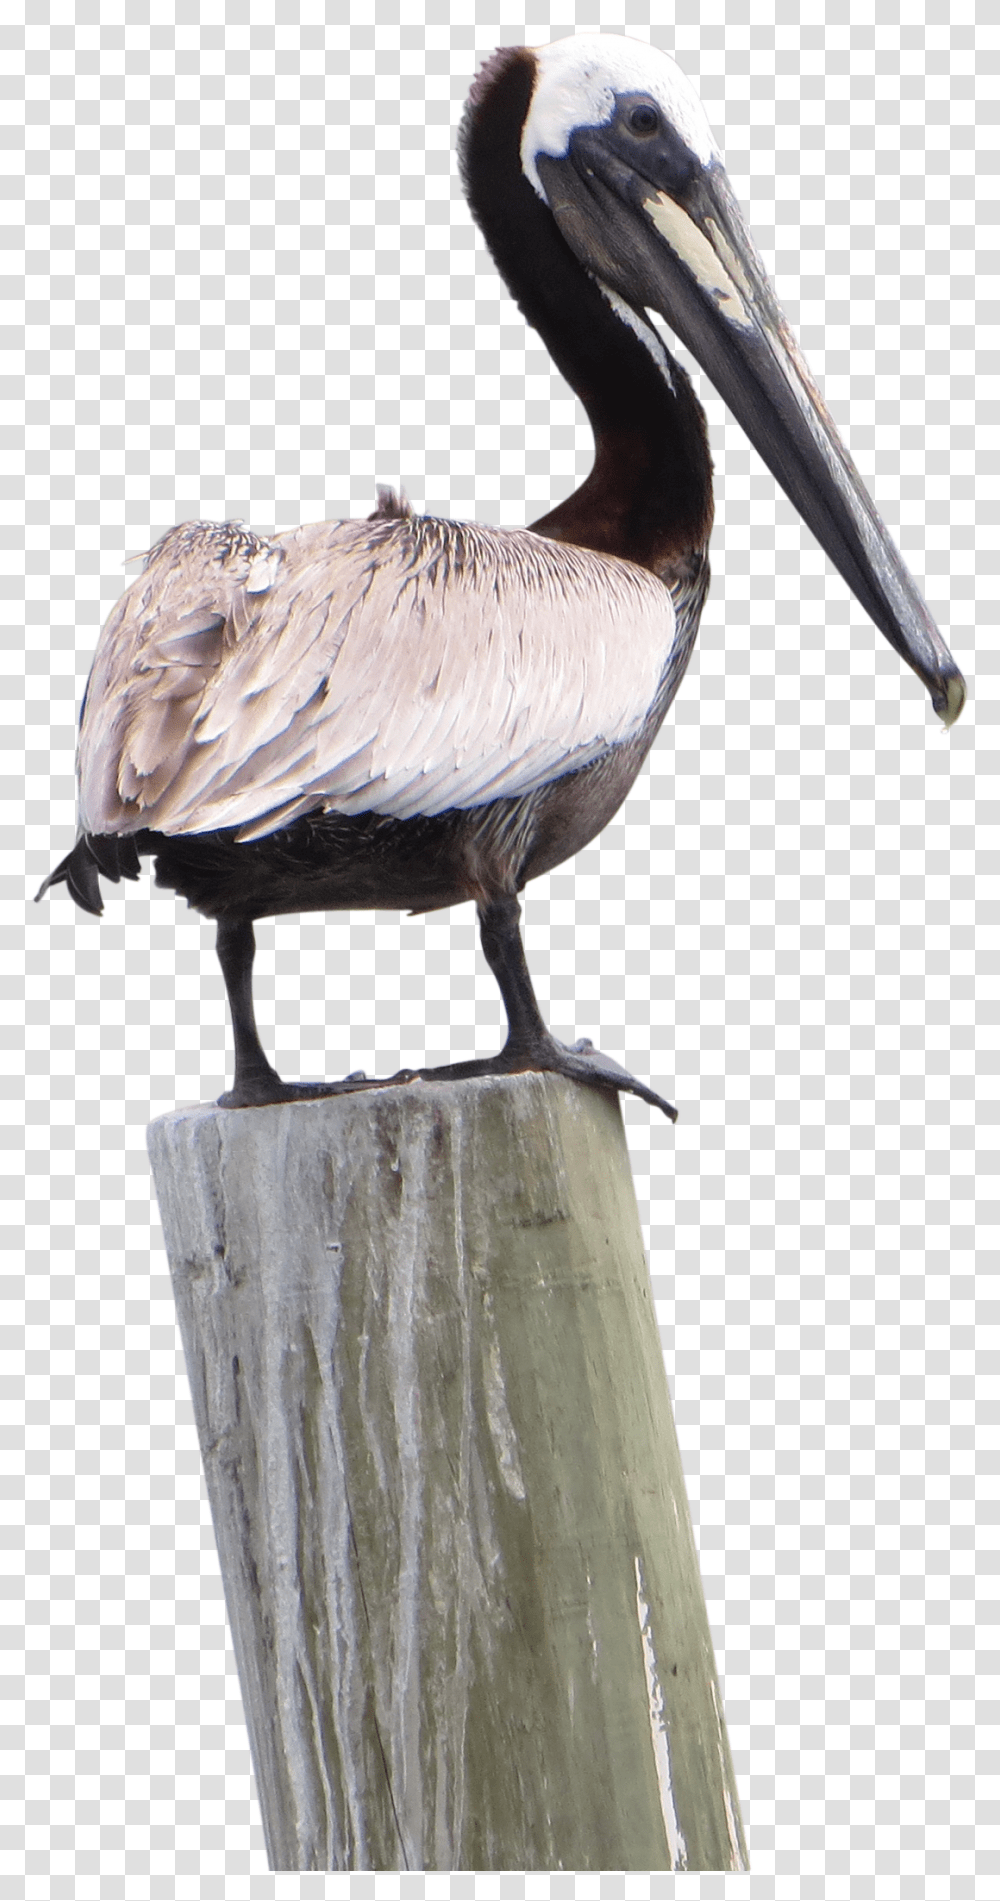 Pelican Pic Pelican, Bird, Animal, Beak Transparent Png